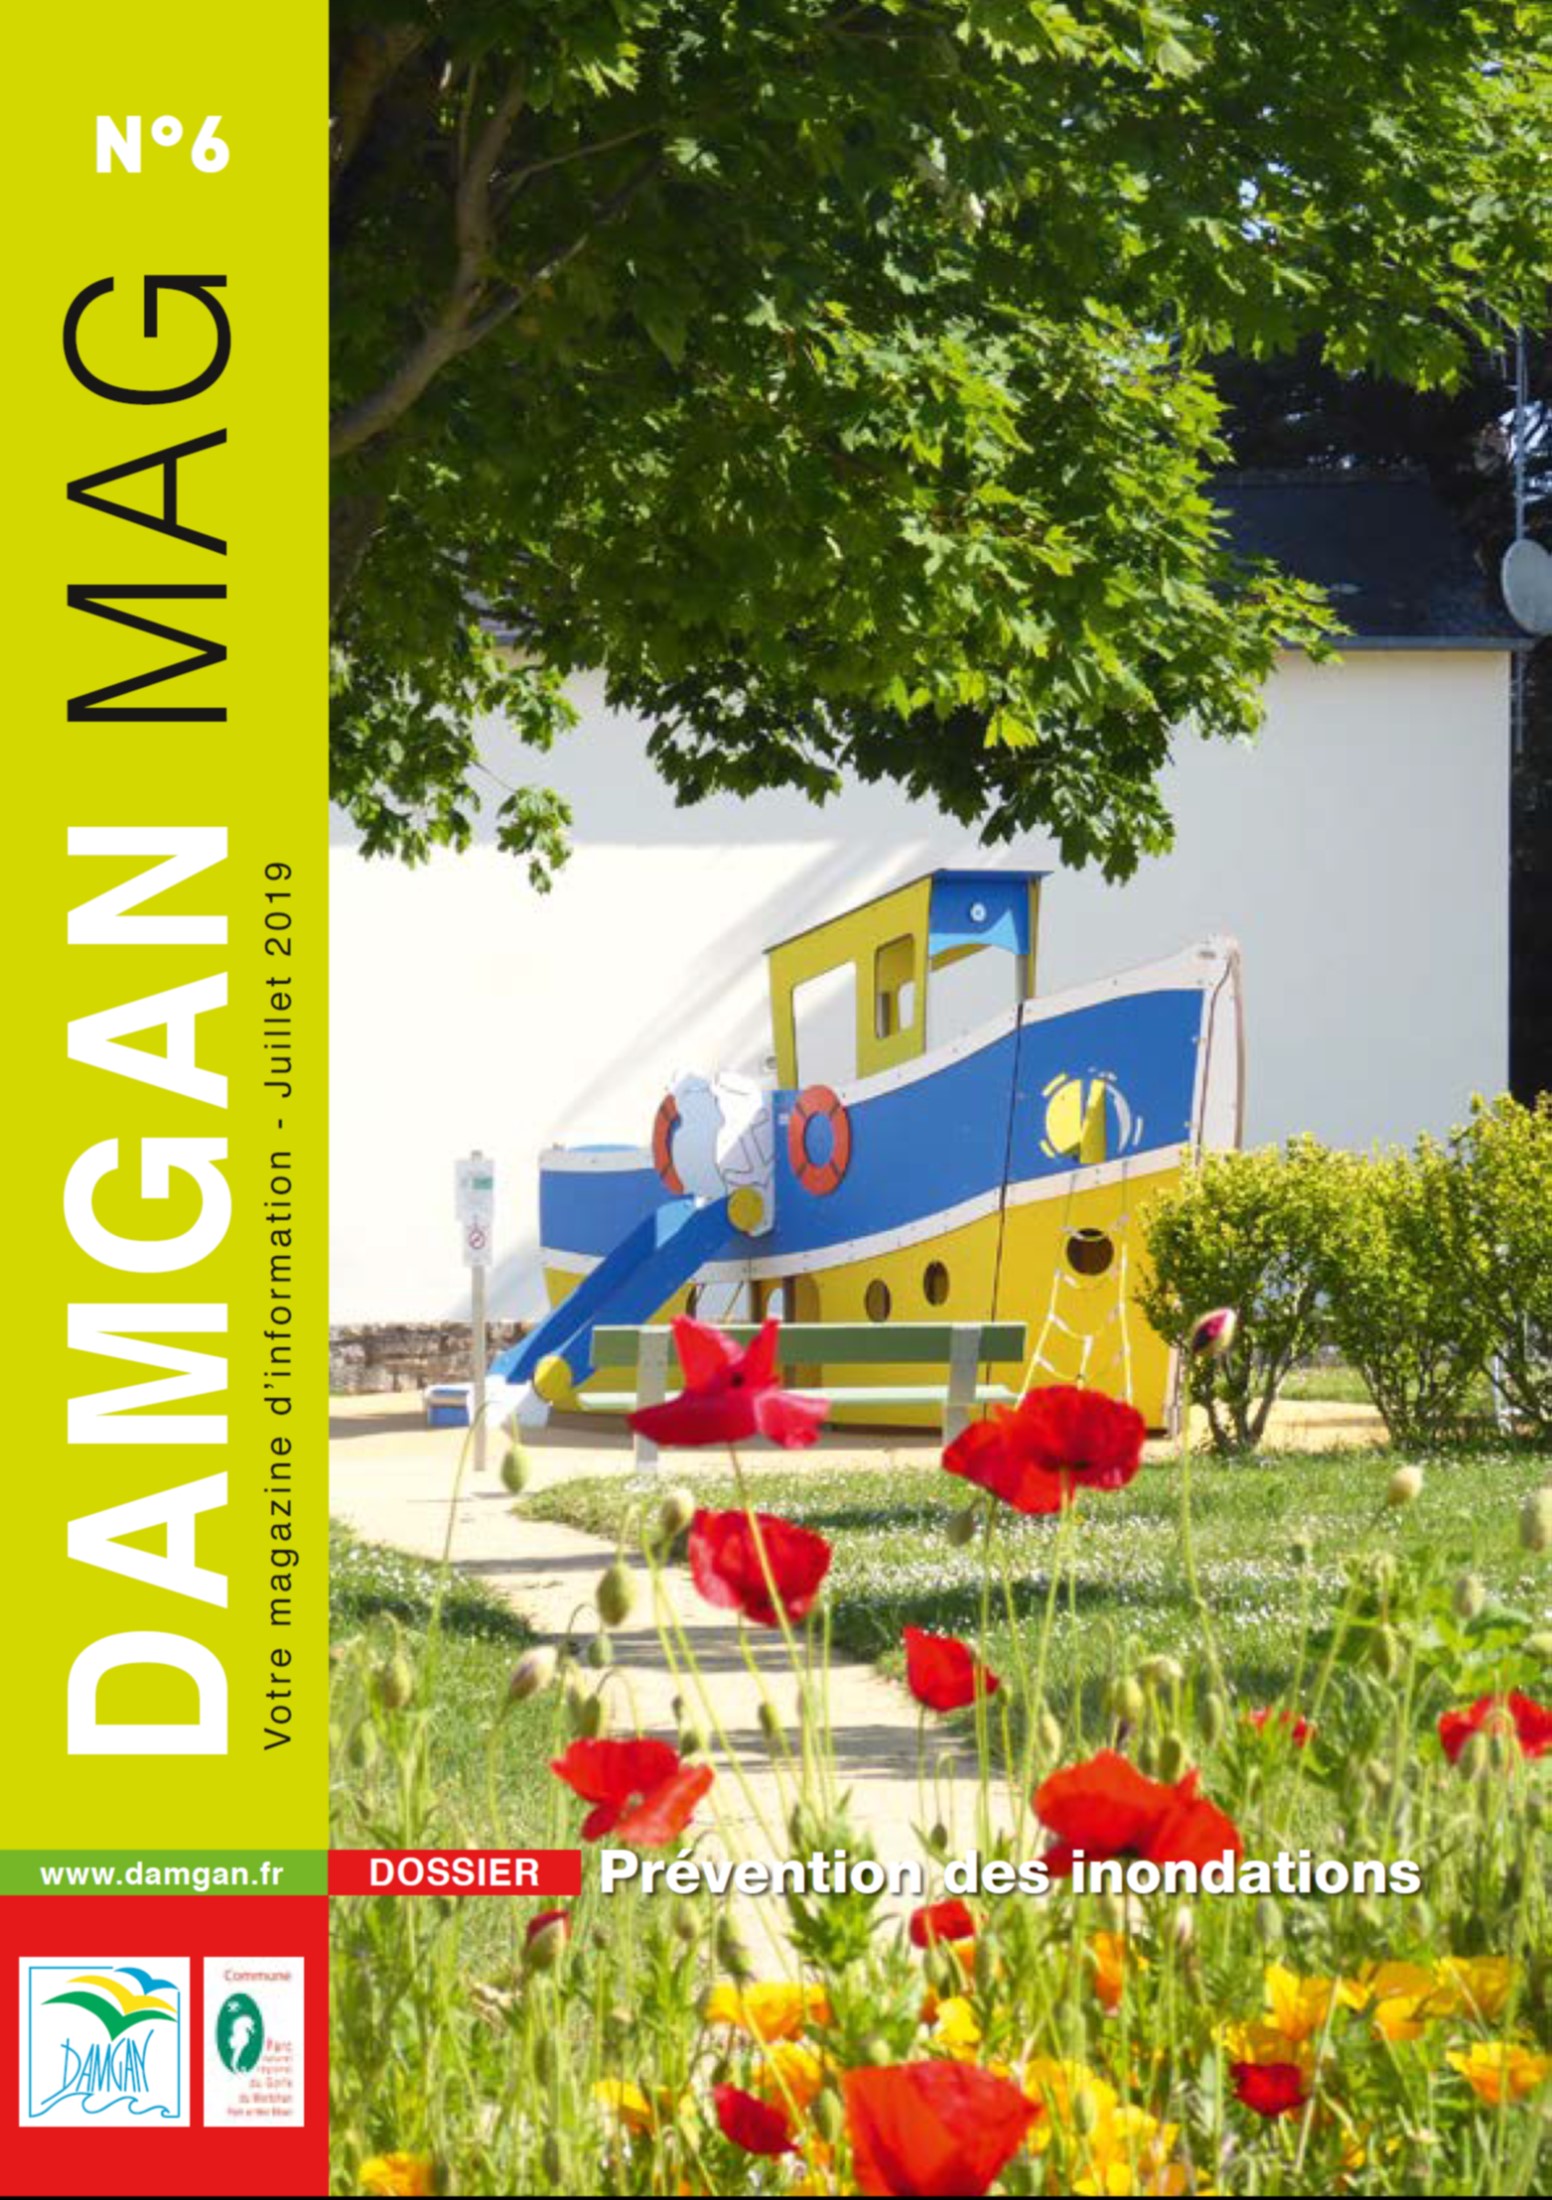 Couverture Damgan Mag n6 juillet 2019